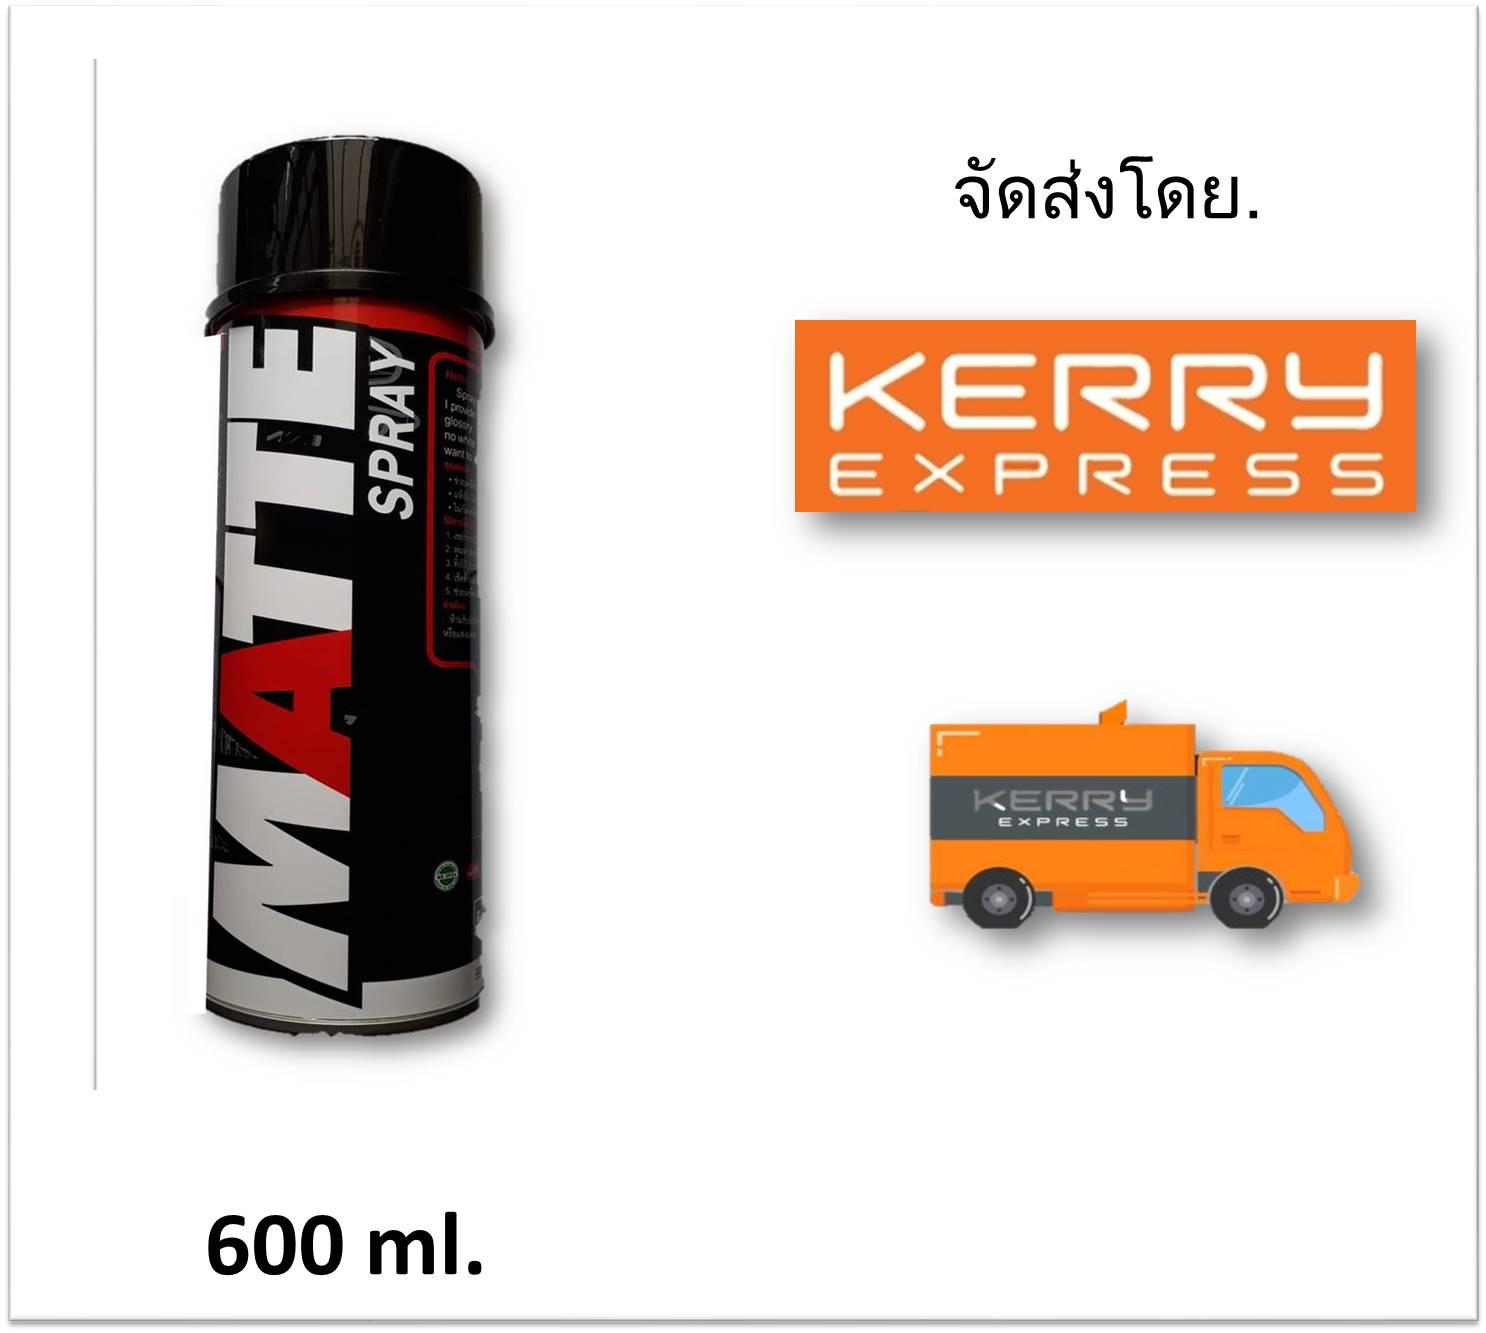 LUBE71 Matte Spray สเปรย์เคลือบสีด้าน ขนาด 600 ml. เหมาะสำหรับชิ้นส่วน (บิ๊กไบค์/รถมอไซค์/จักรยาน/หมวกกันน๊อคและชิ้นงานทั่วไป)